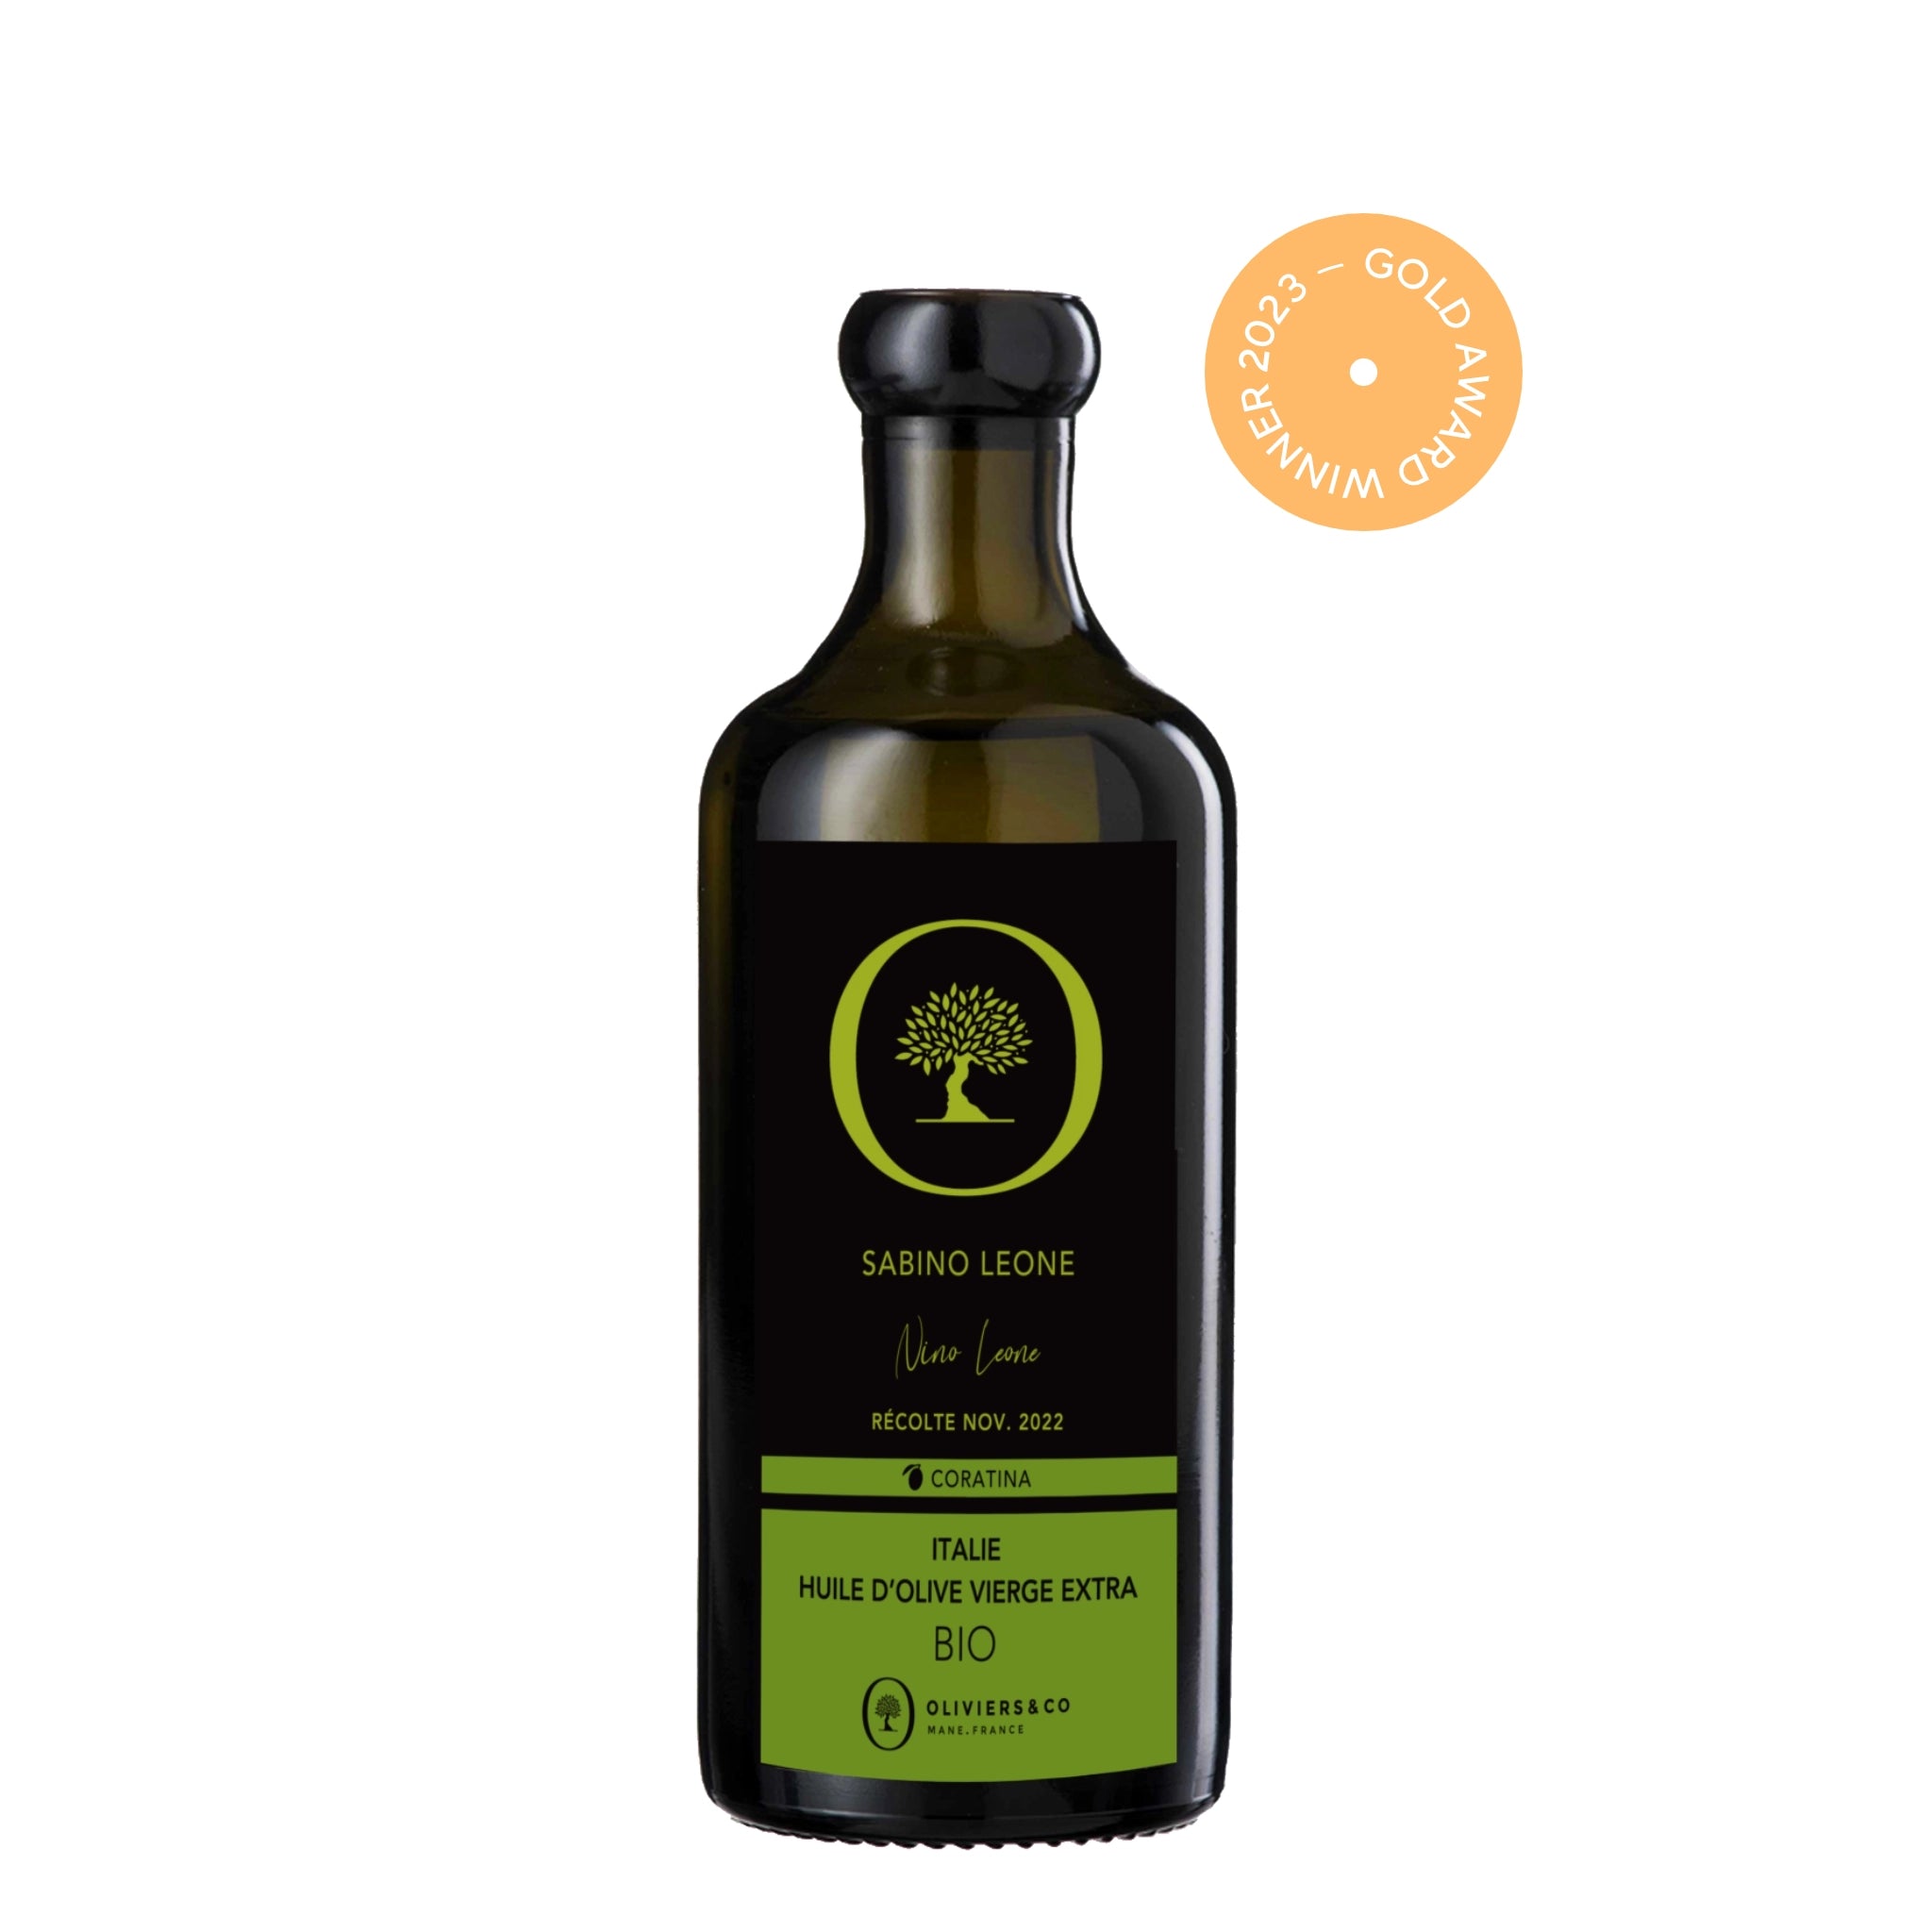 Guldvinder økologisk Sabino Leone ekstra jomfru olivenolie 250 ml fra Oliviers & Co